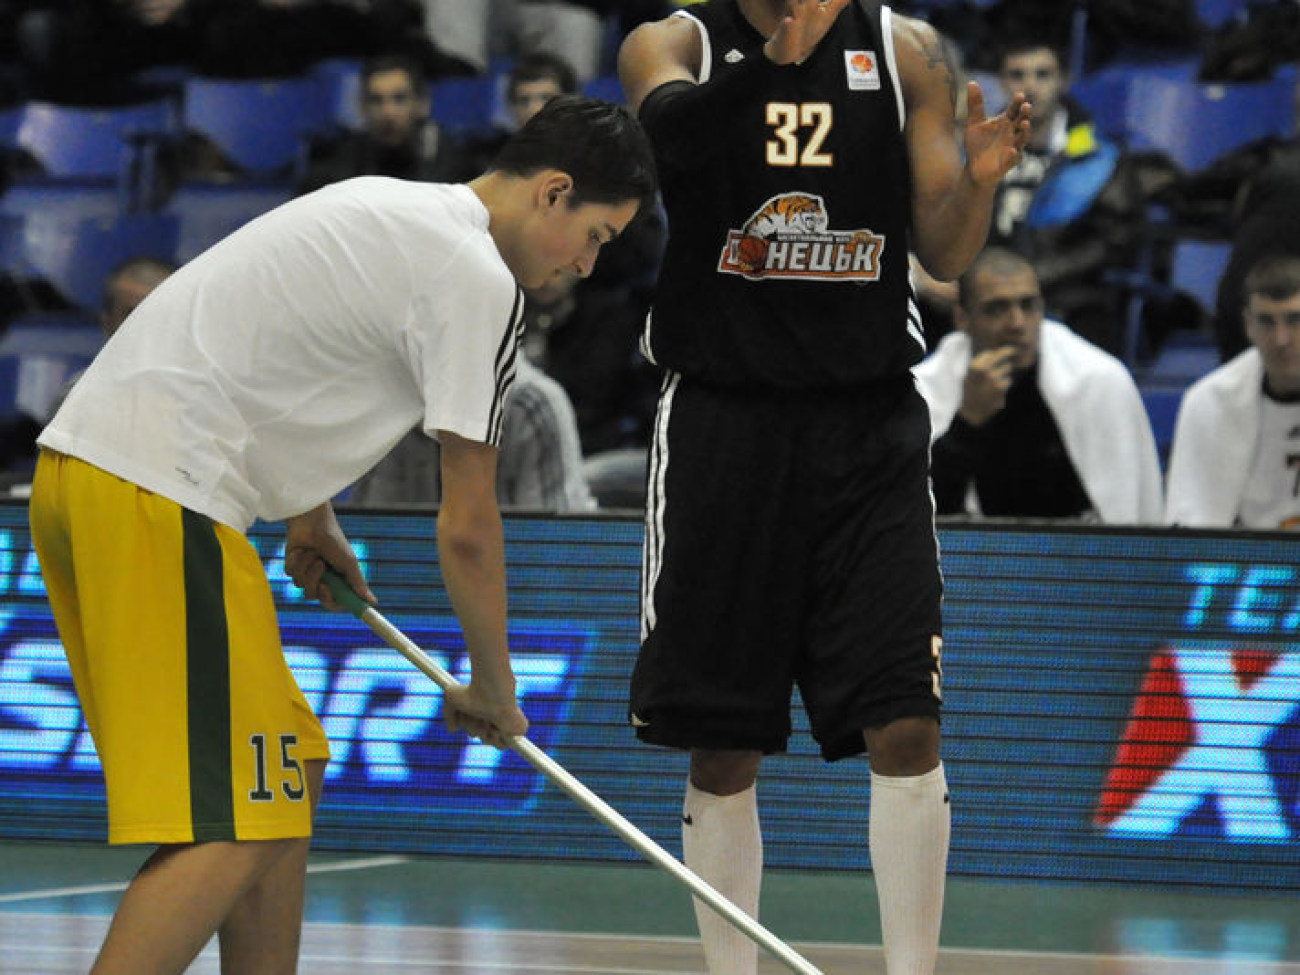 Киевский &#171;Будівельник&#187; выиграл Кубок Украины по баскетболу, 9 февраля 2014г.